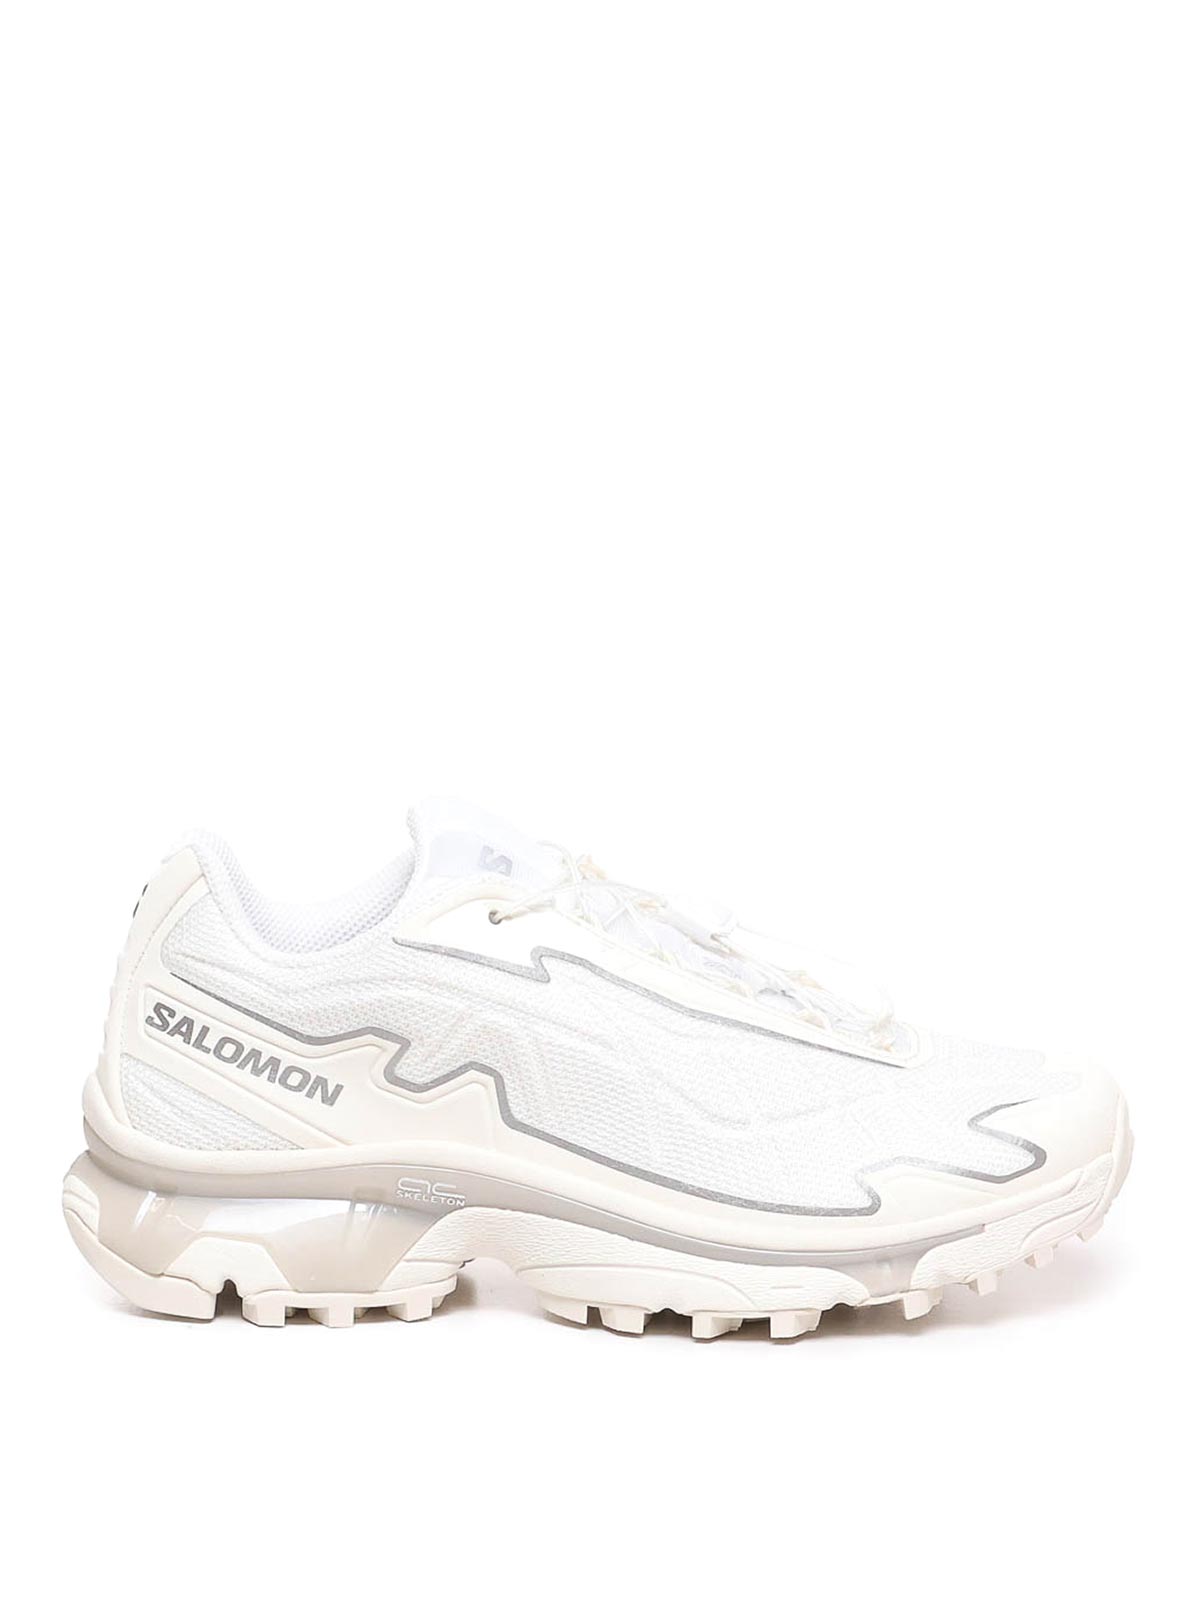 Shop Salomon Xt-slate Sneakers In Blanco